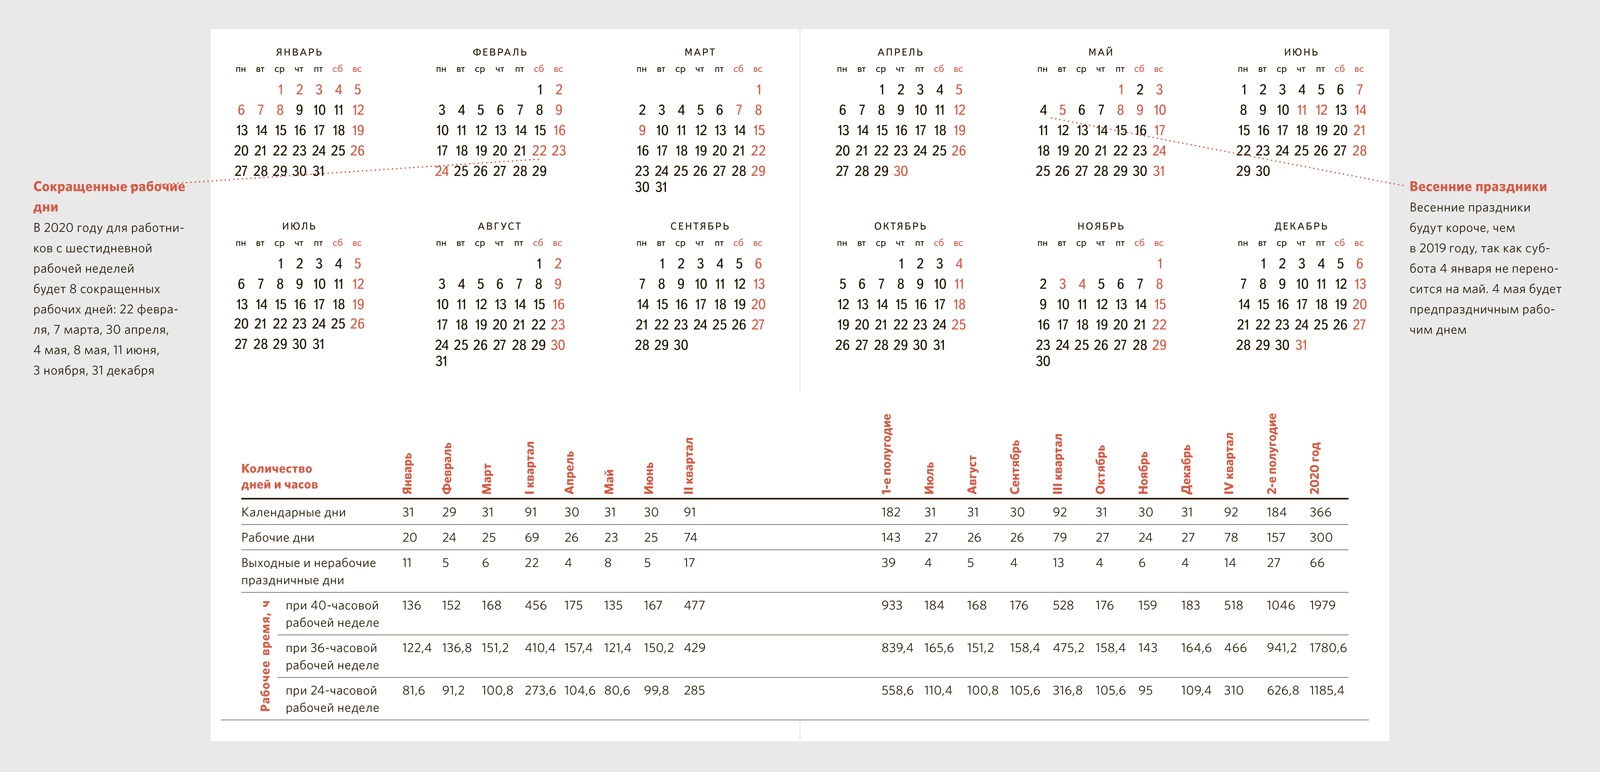 Сколько часов в марте по производственному календарю. Производственный календарь на 2020 год для пятидневной рабочей недели. Календарь кадровика. Производств календ 2020. Производственный календарь кадровика.